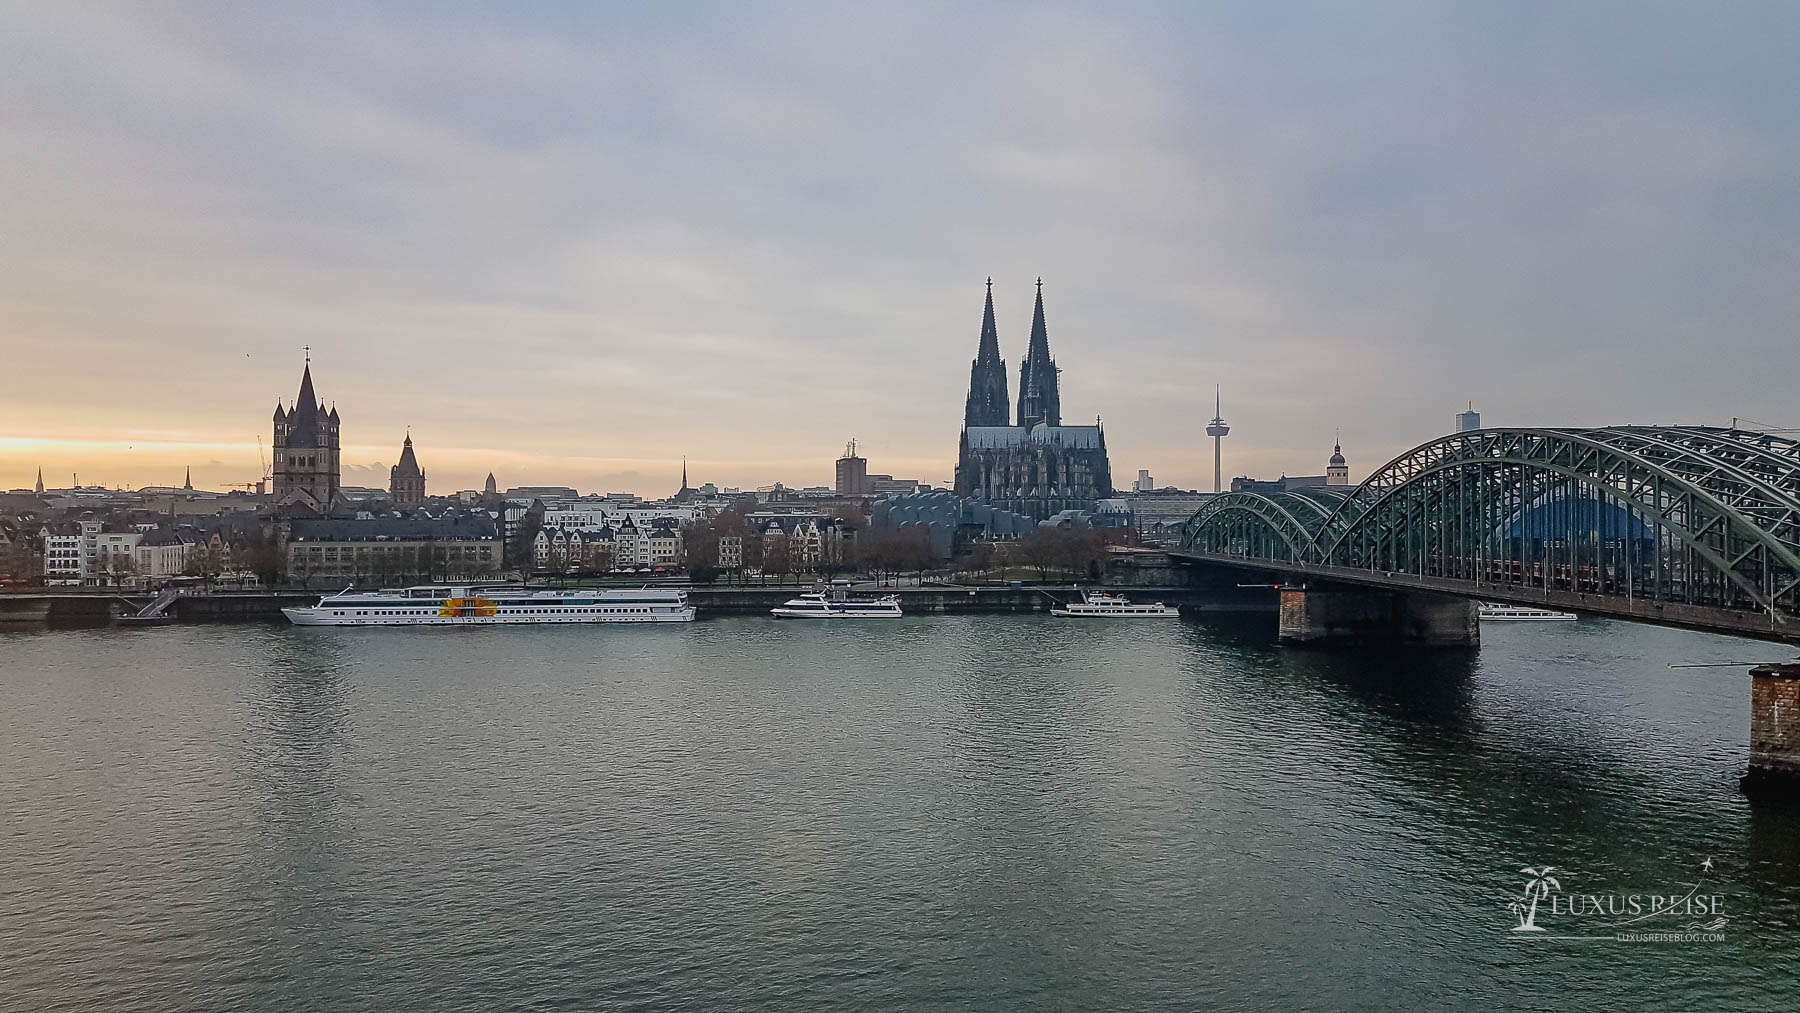 Koeln Sehenswuerdigkeiten - Top 10 Reisetipps Koeln - Koeln bei Nacht mit Kölner Dom und Rhein